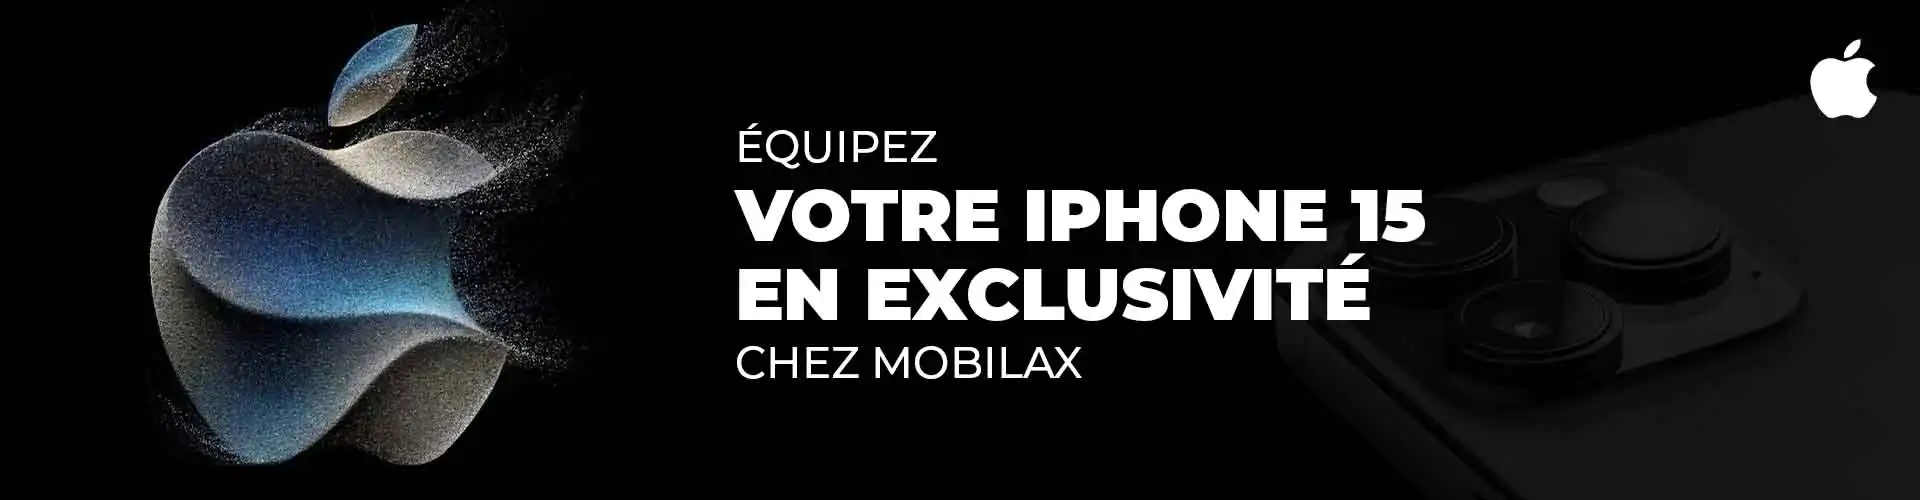 Équipez votre iPhone 15 en exclusivité chez Mobilax